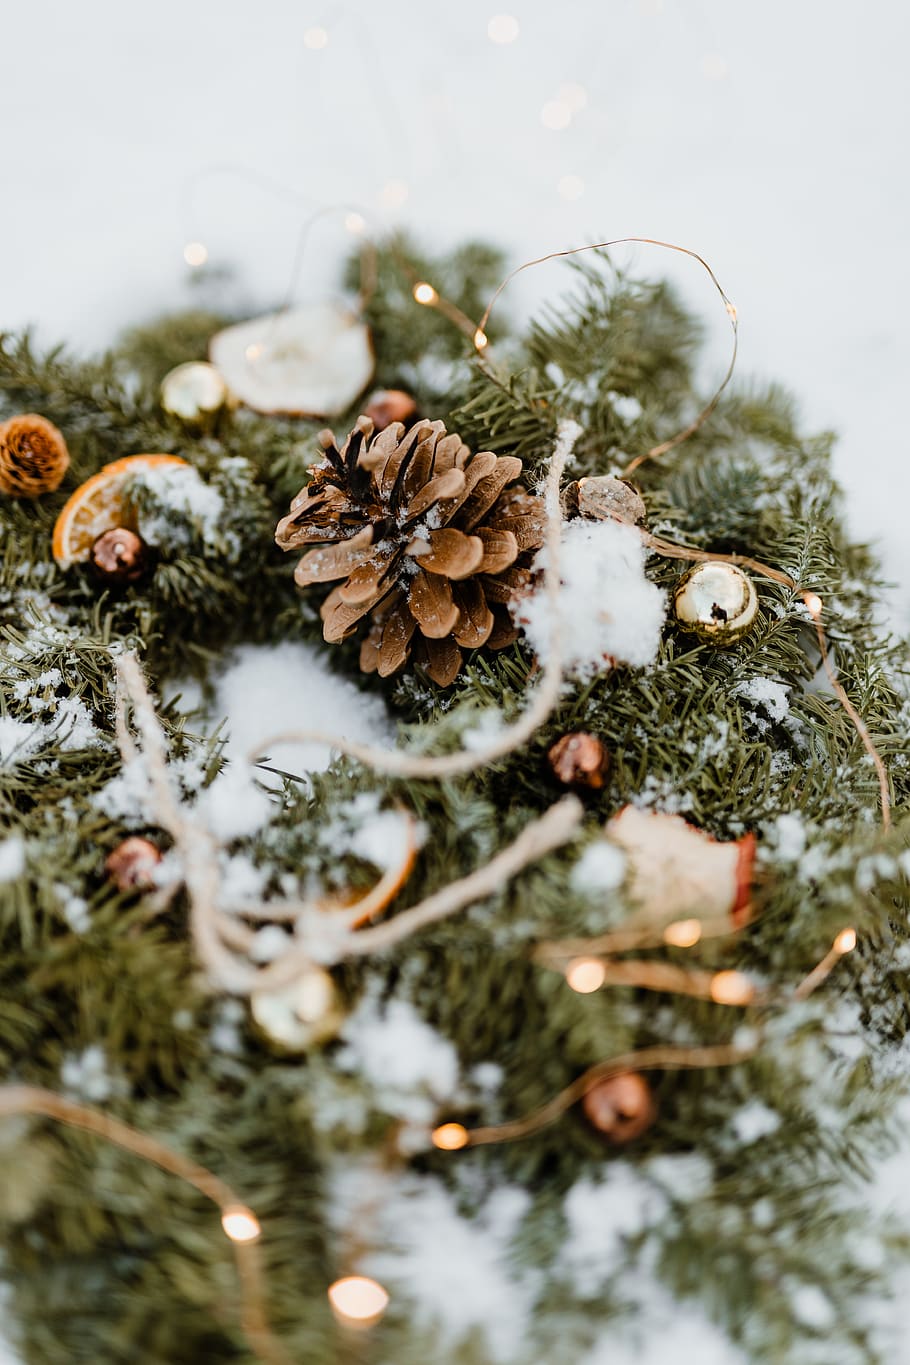 natal, decoração, decorações, dezembro, neve, Inverno, Coroa de flores, foco seletivo, árvore, decoração de natal